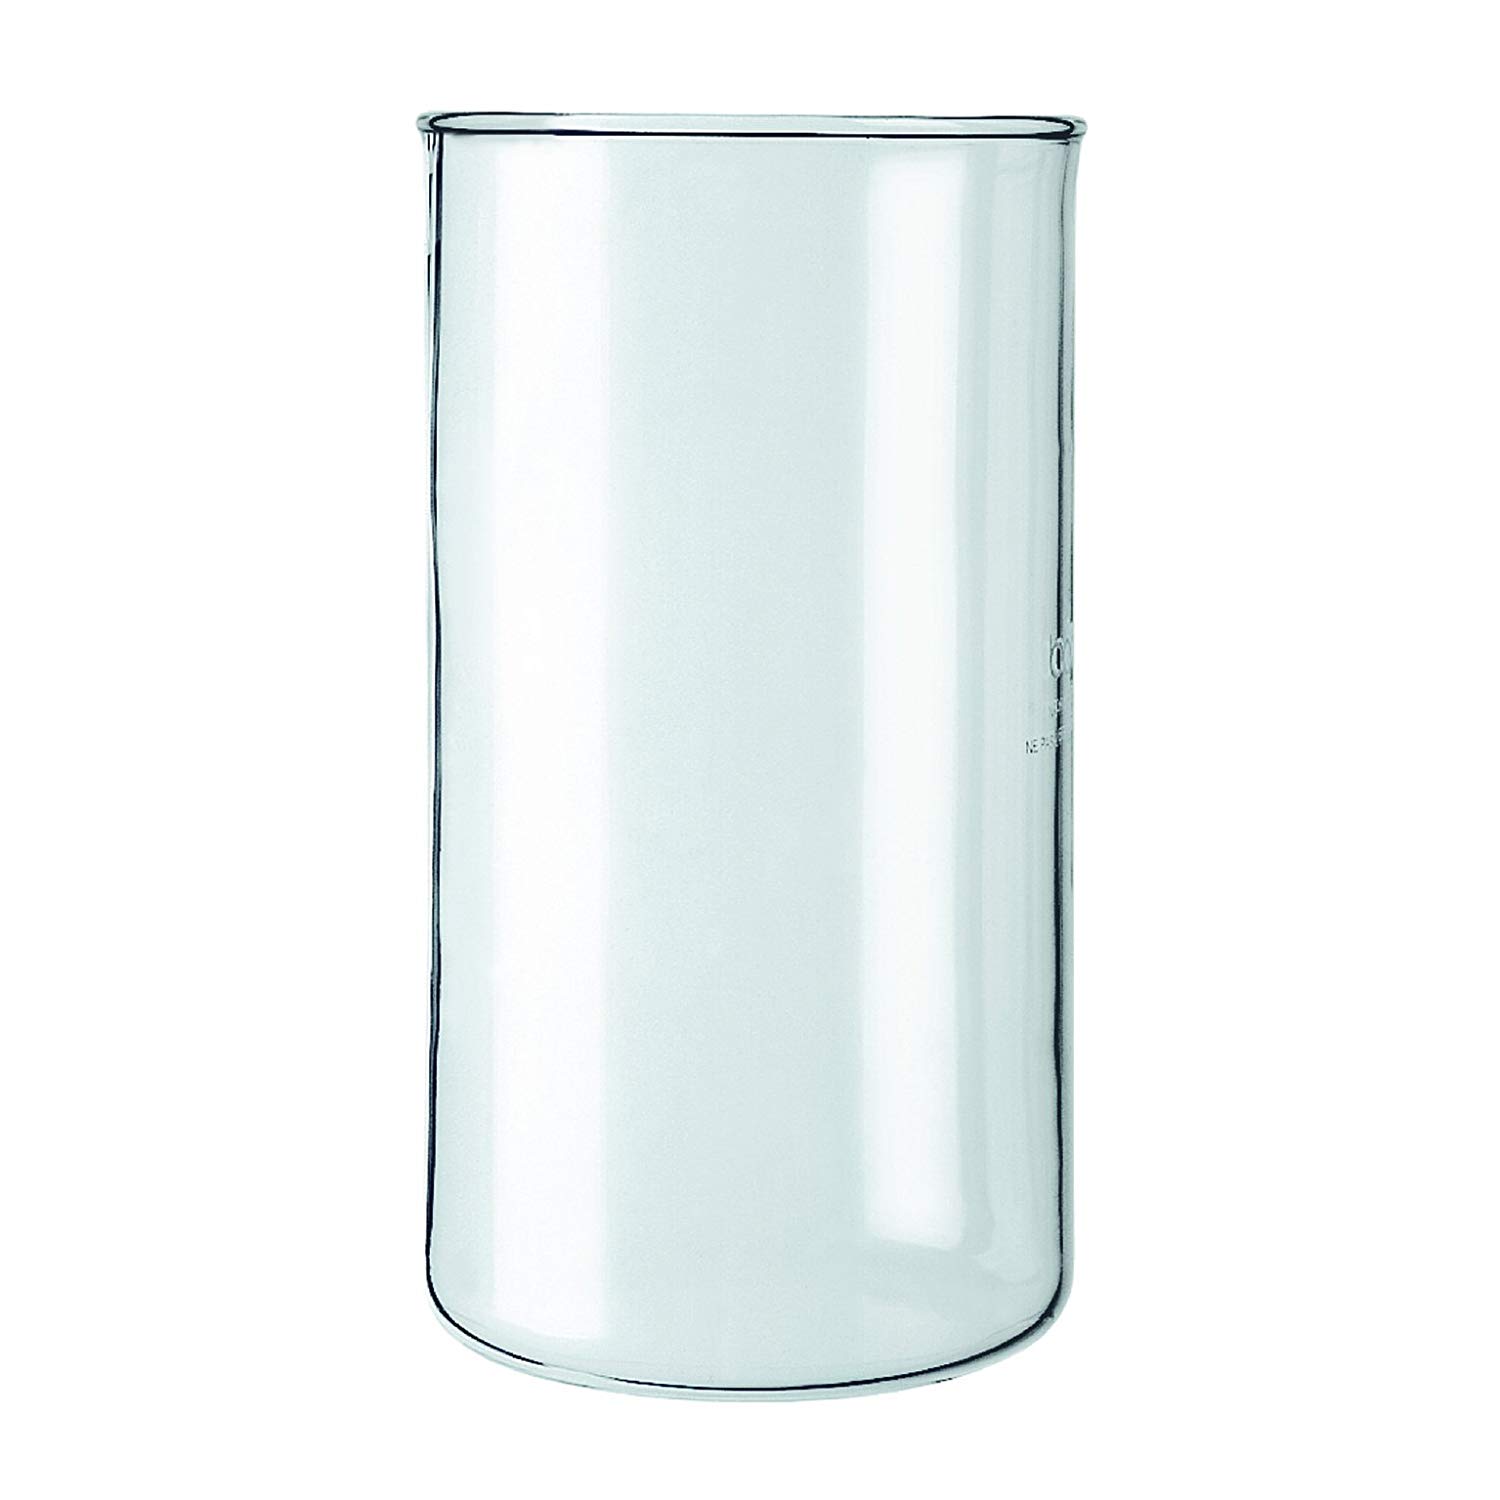 Bodum 0.35 L Spare Glass Without Spout - 3 Cup/12 Oz